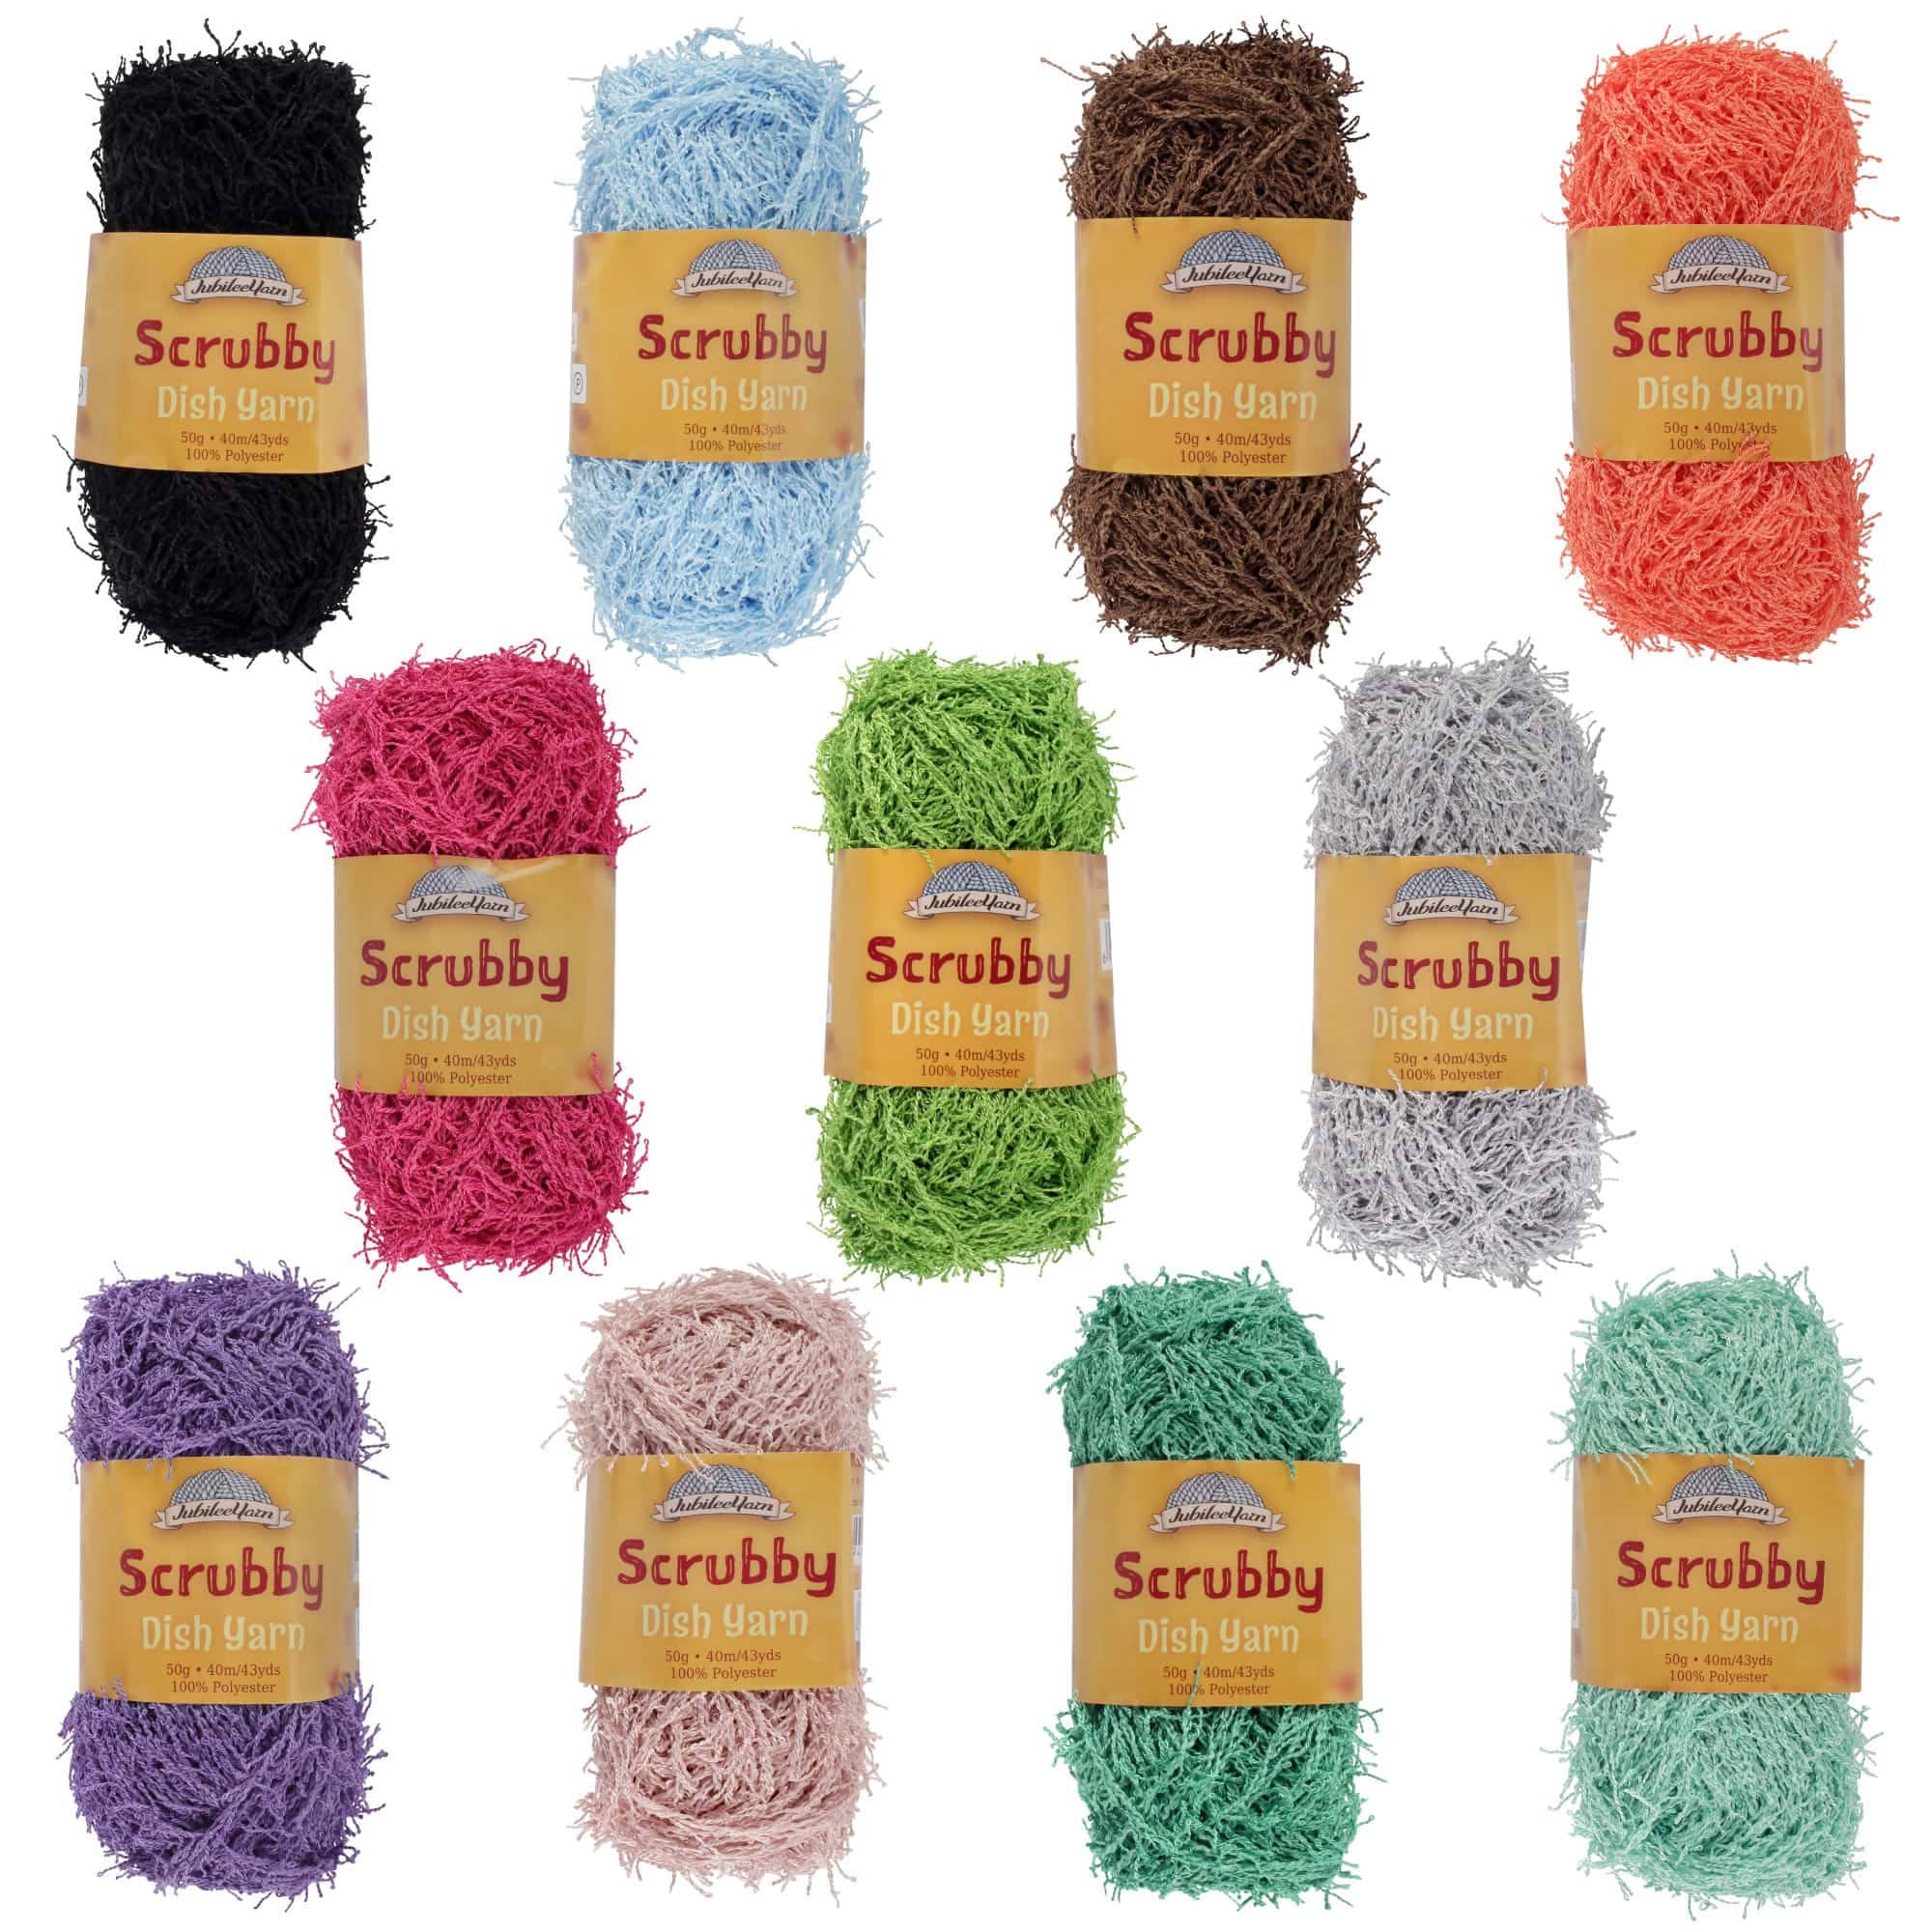  scrubby Yarn Cotton line Super Bulky Yarn Acrylic Yarn Chunky  Yarn for Crocheting Yarn kit White Yarn Crochet Hook Yarn Storage Fuzzy  Yarn Black Yarn Cotton Thread Baby coarse Wool